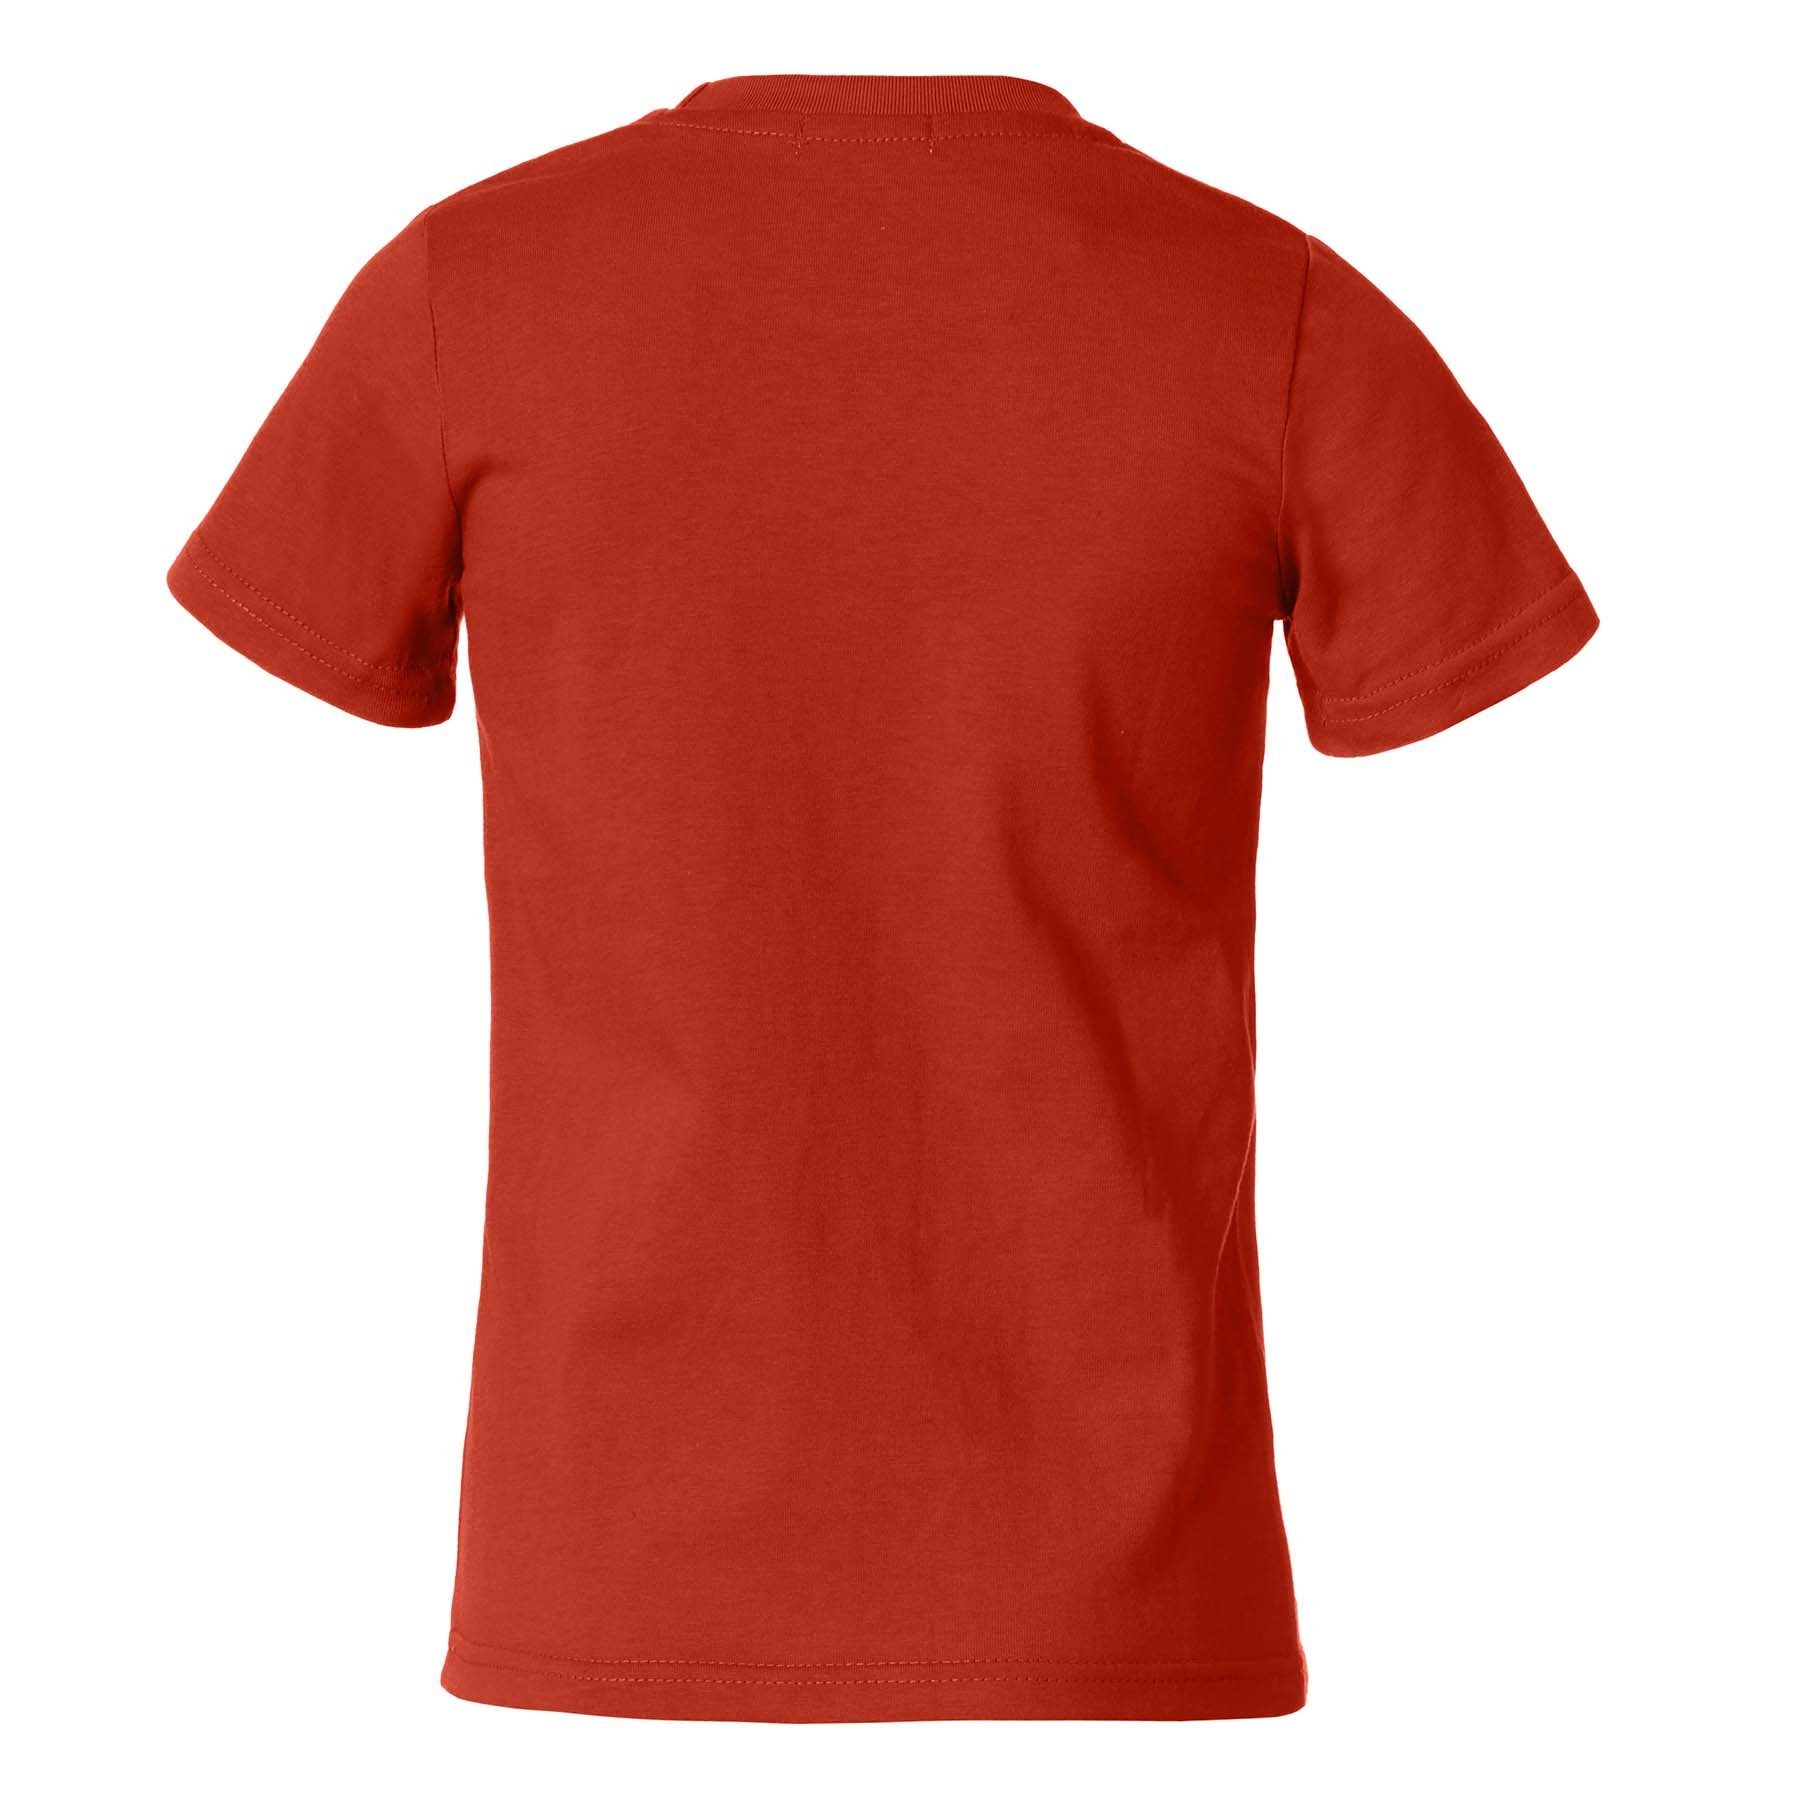 T-Shirt Männer weinrot T-Shirt Rundhals dressforfun